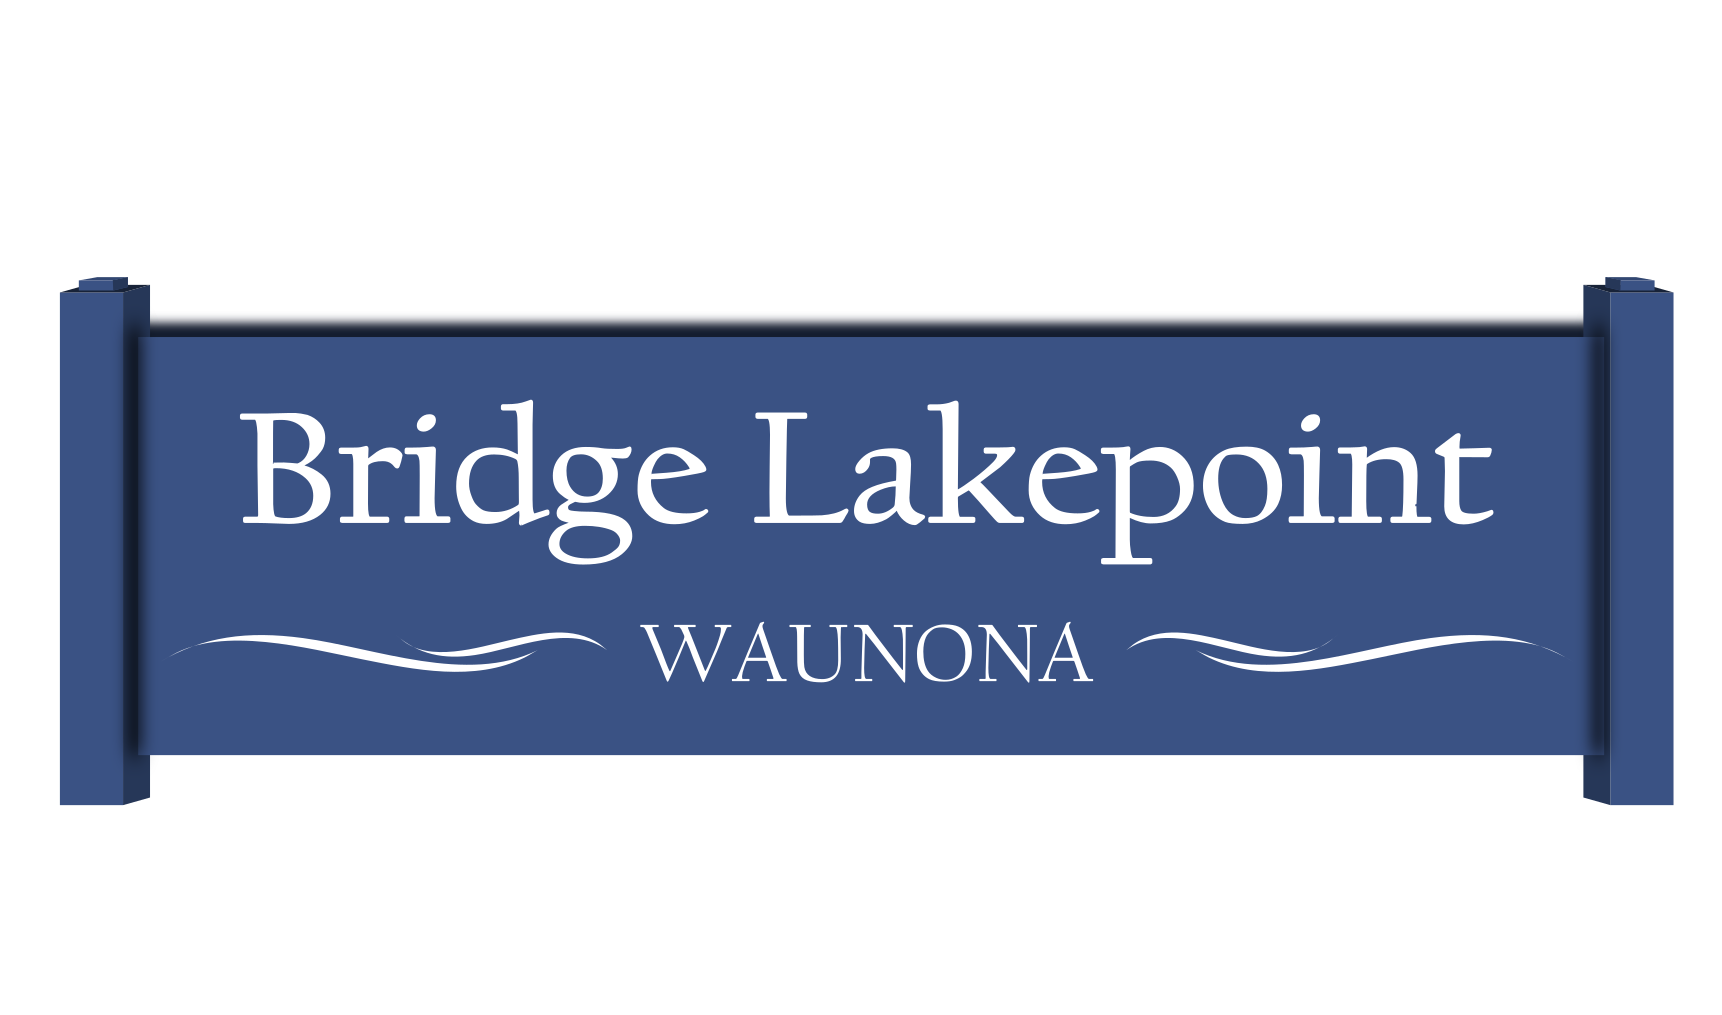 Bridge-Lakepoint-Waunona Neighborhoods Band Together for Good